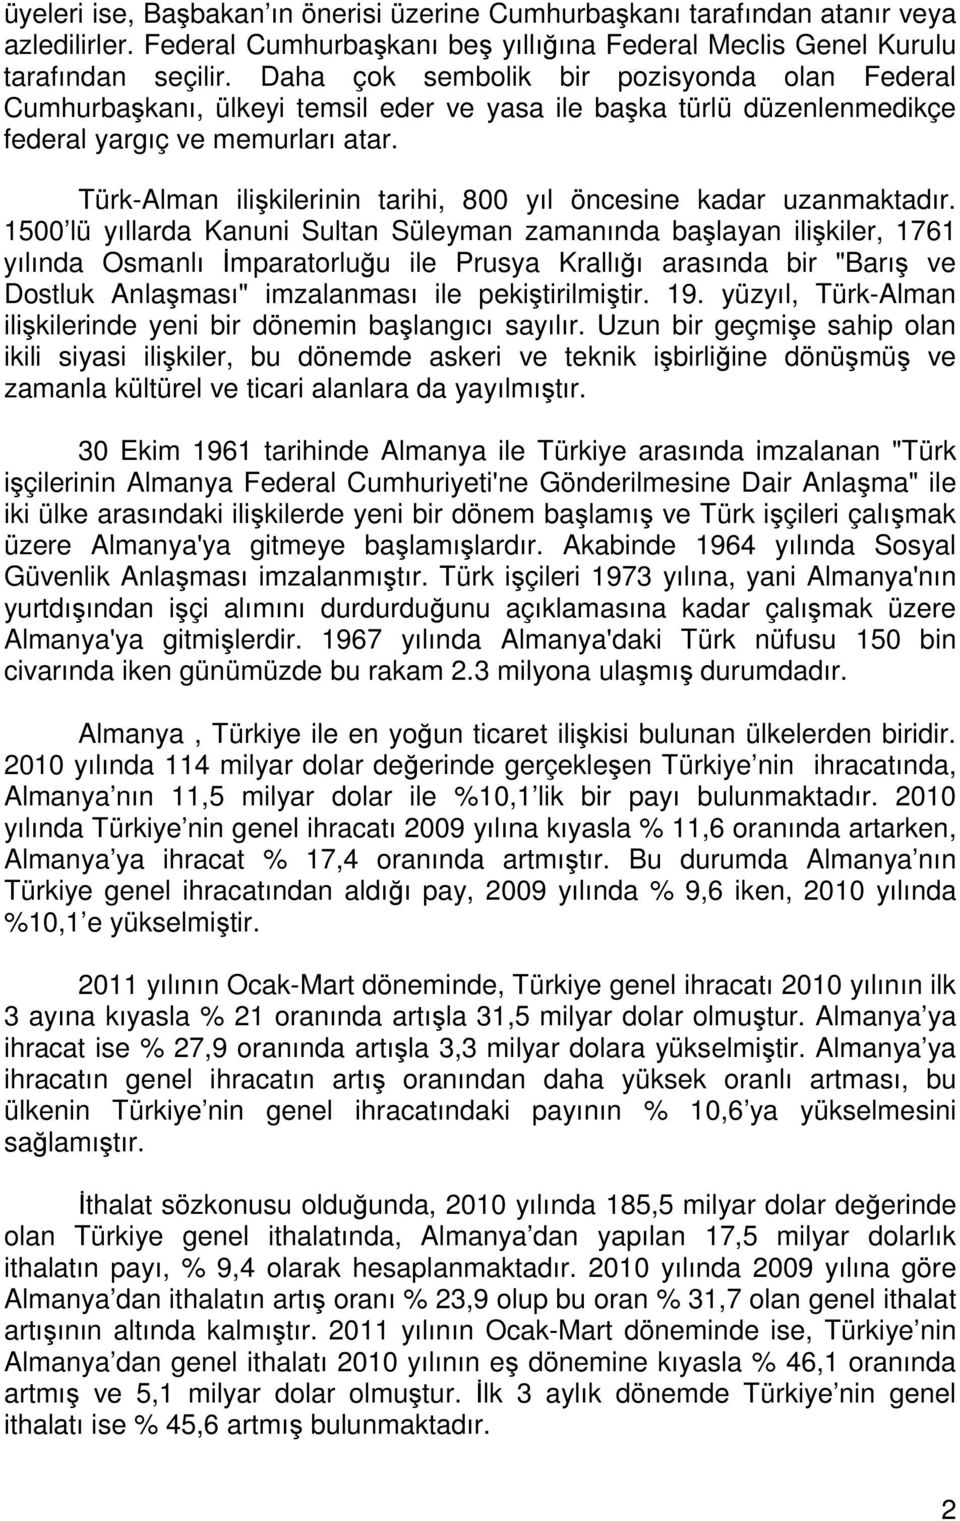 Türk-Alman ilişkilerinin tarihi, 800 yıl öncesine kadar uzanmaktadır.